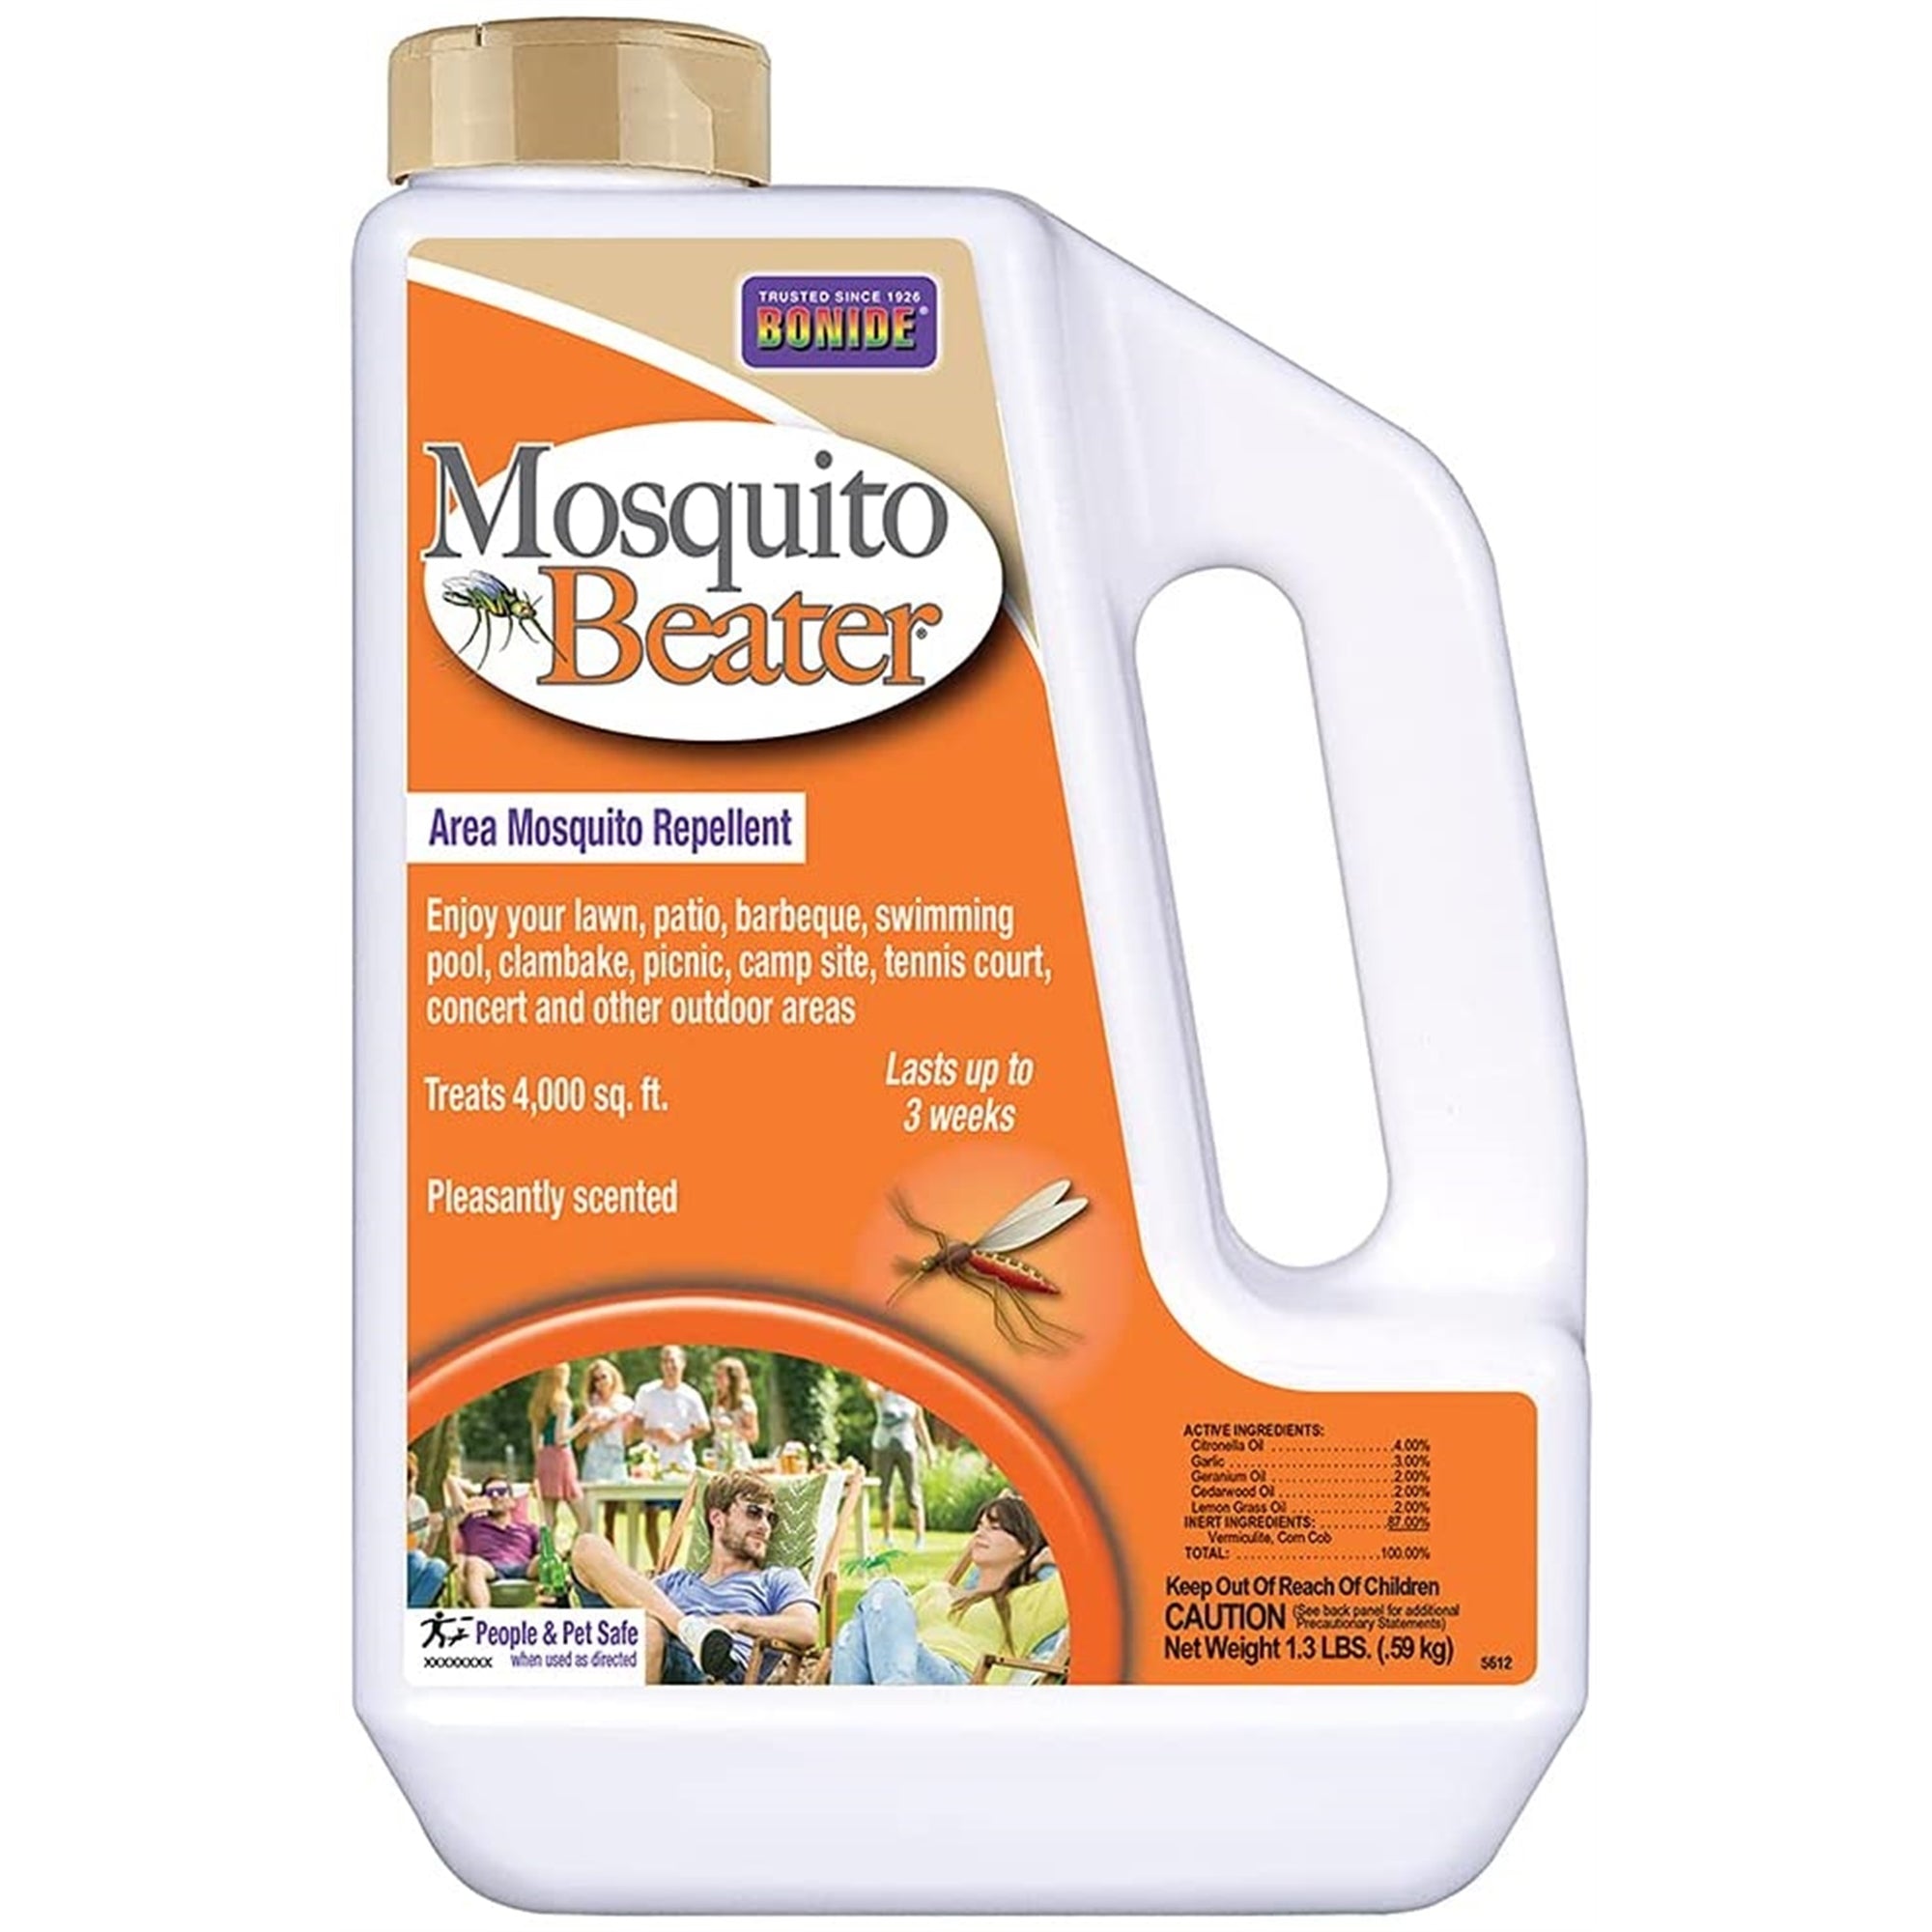 Bonide Mosquito Beater Area Mosquito Repellent Granuals, 1.5 lb bag